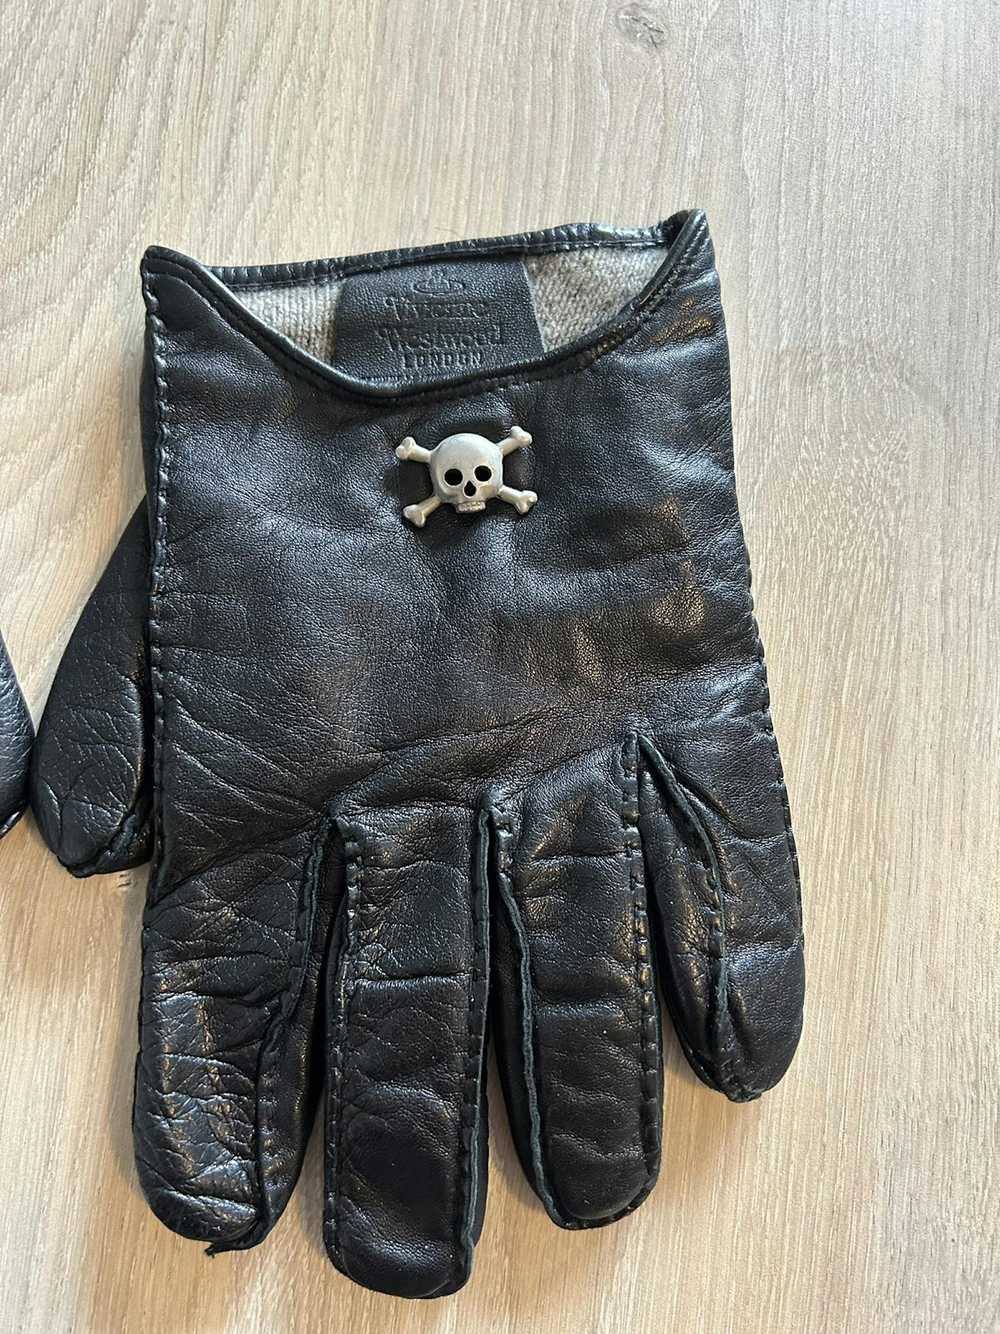 Vivienne Westwood Leather Skull Gloves - image 2